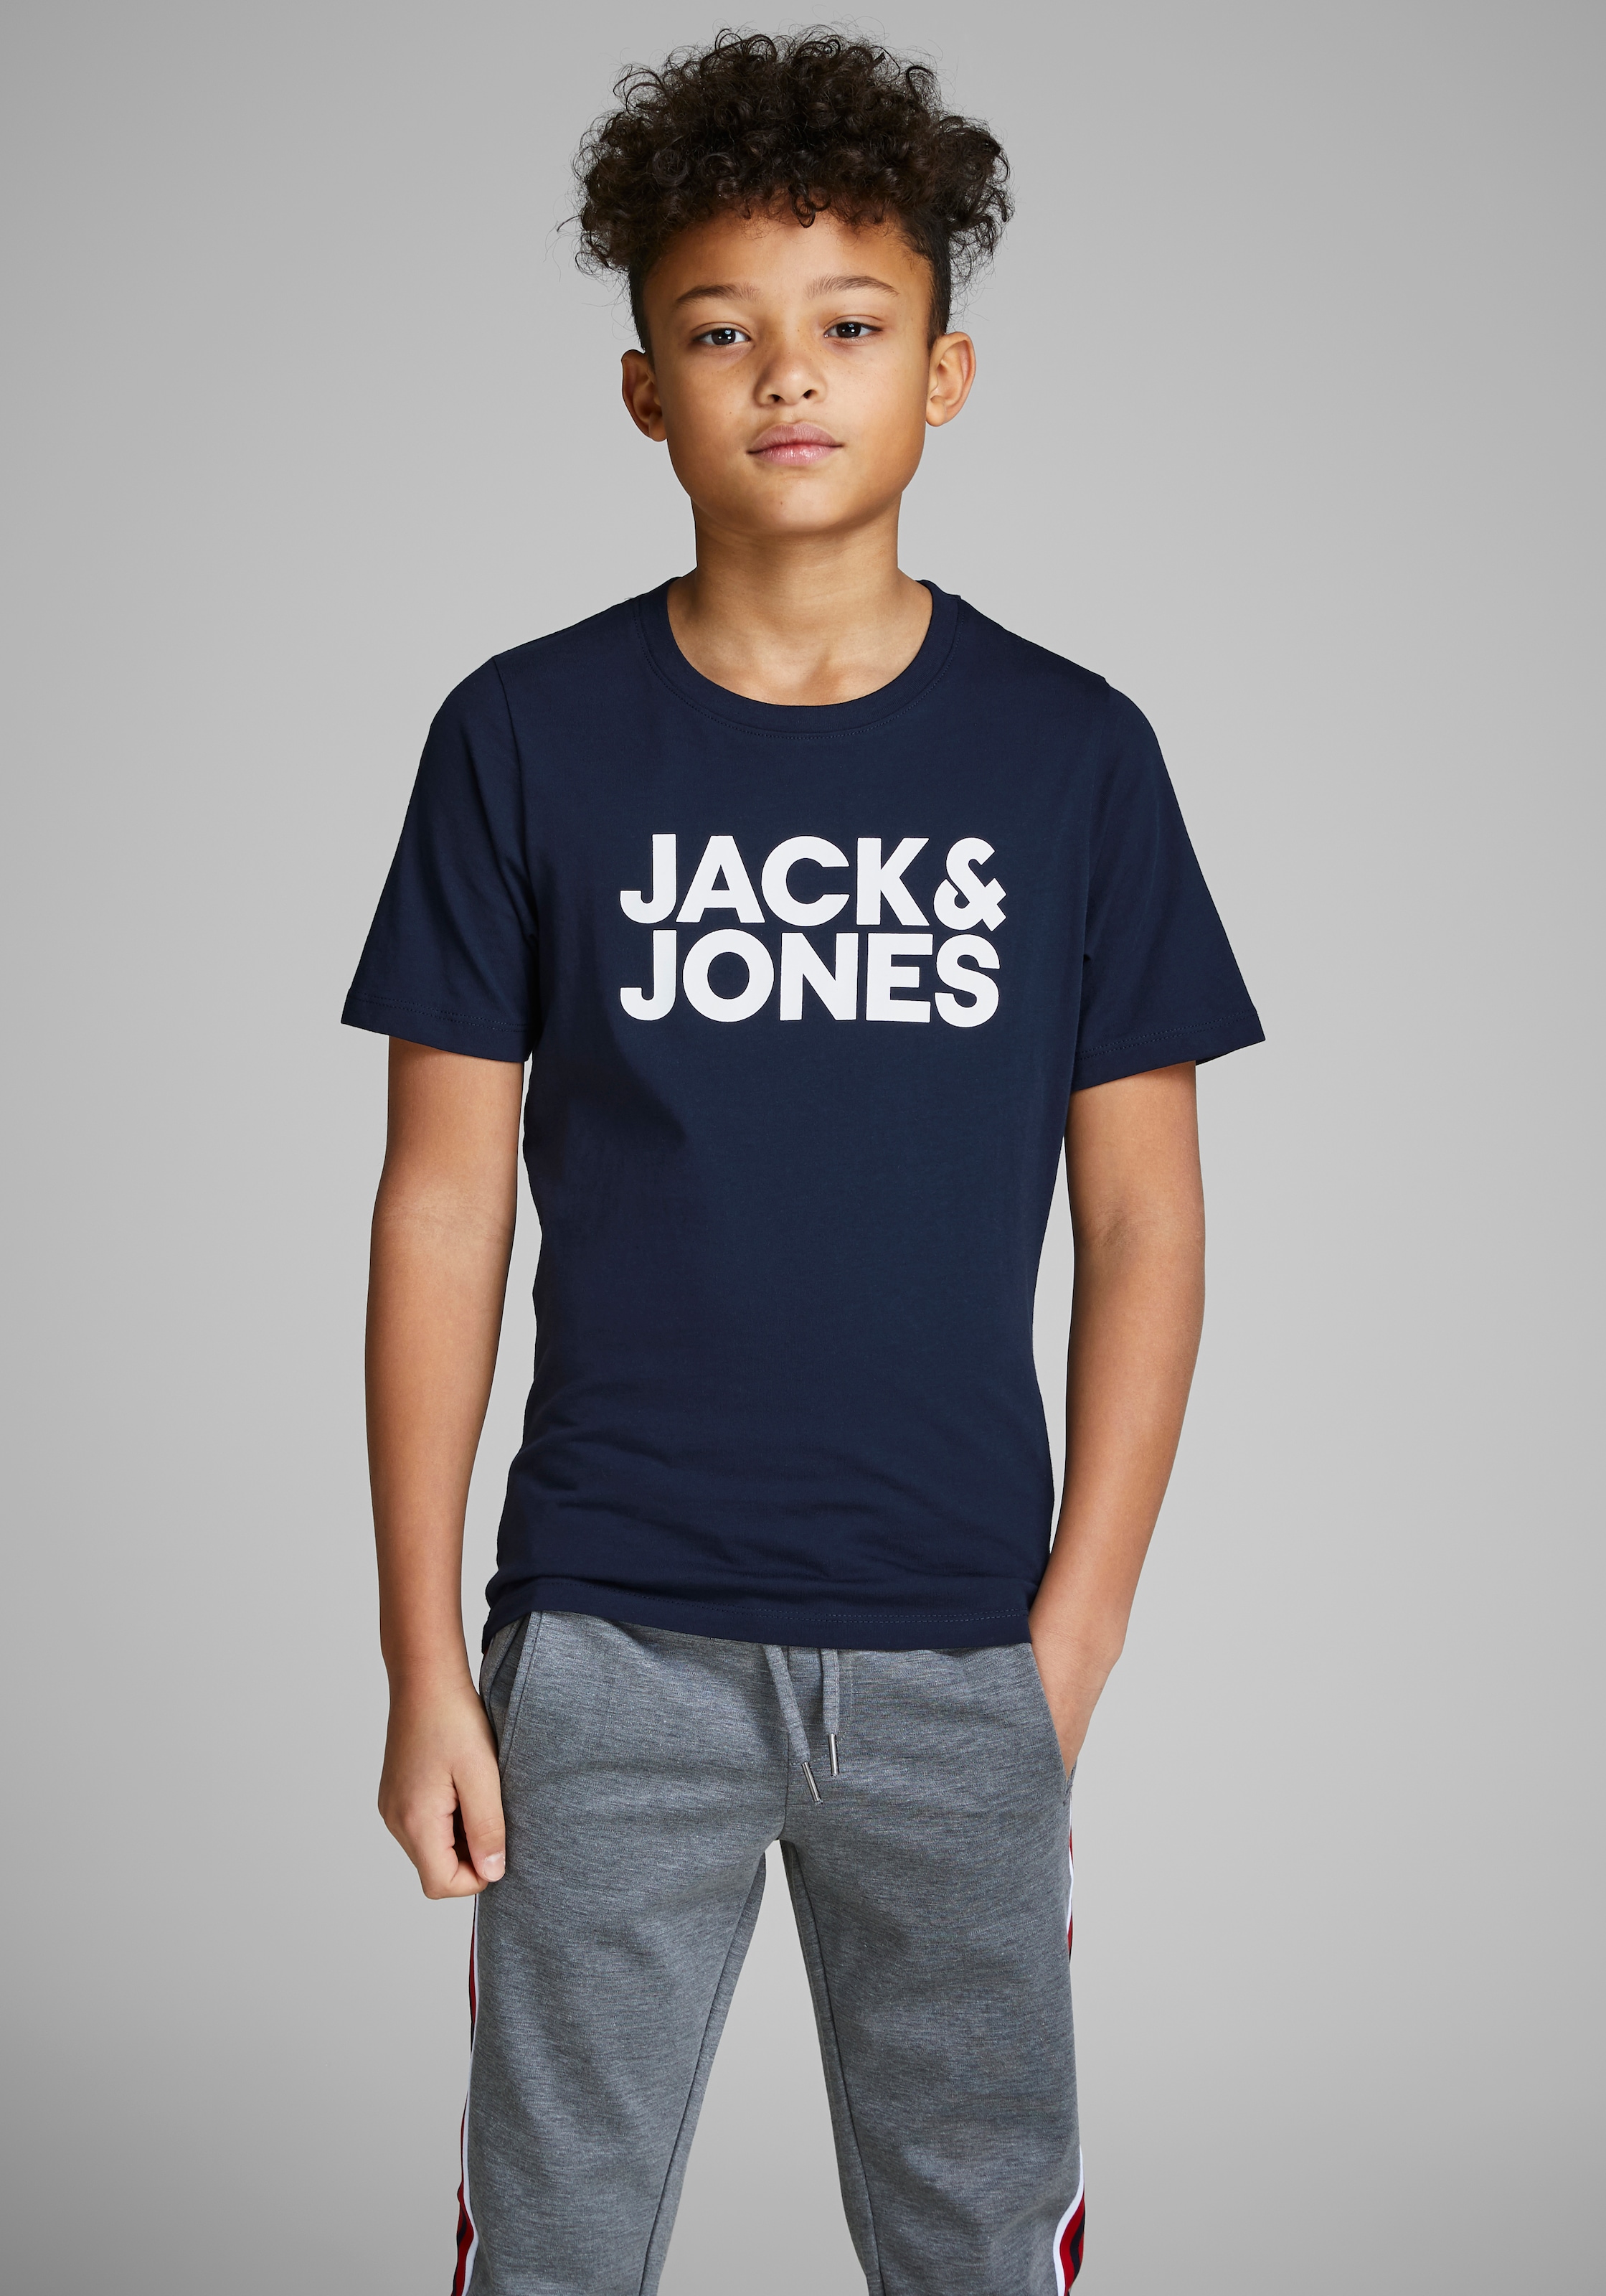 Jack & Jones T-Shirt OTTO bei Junior kaufen